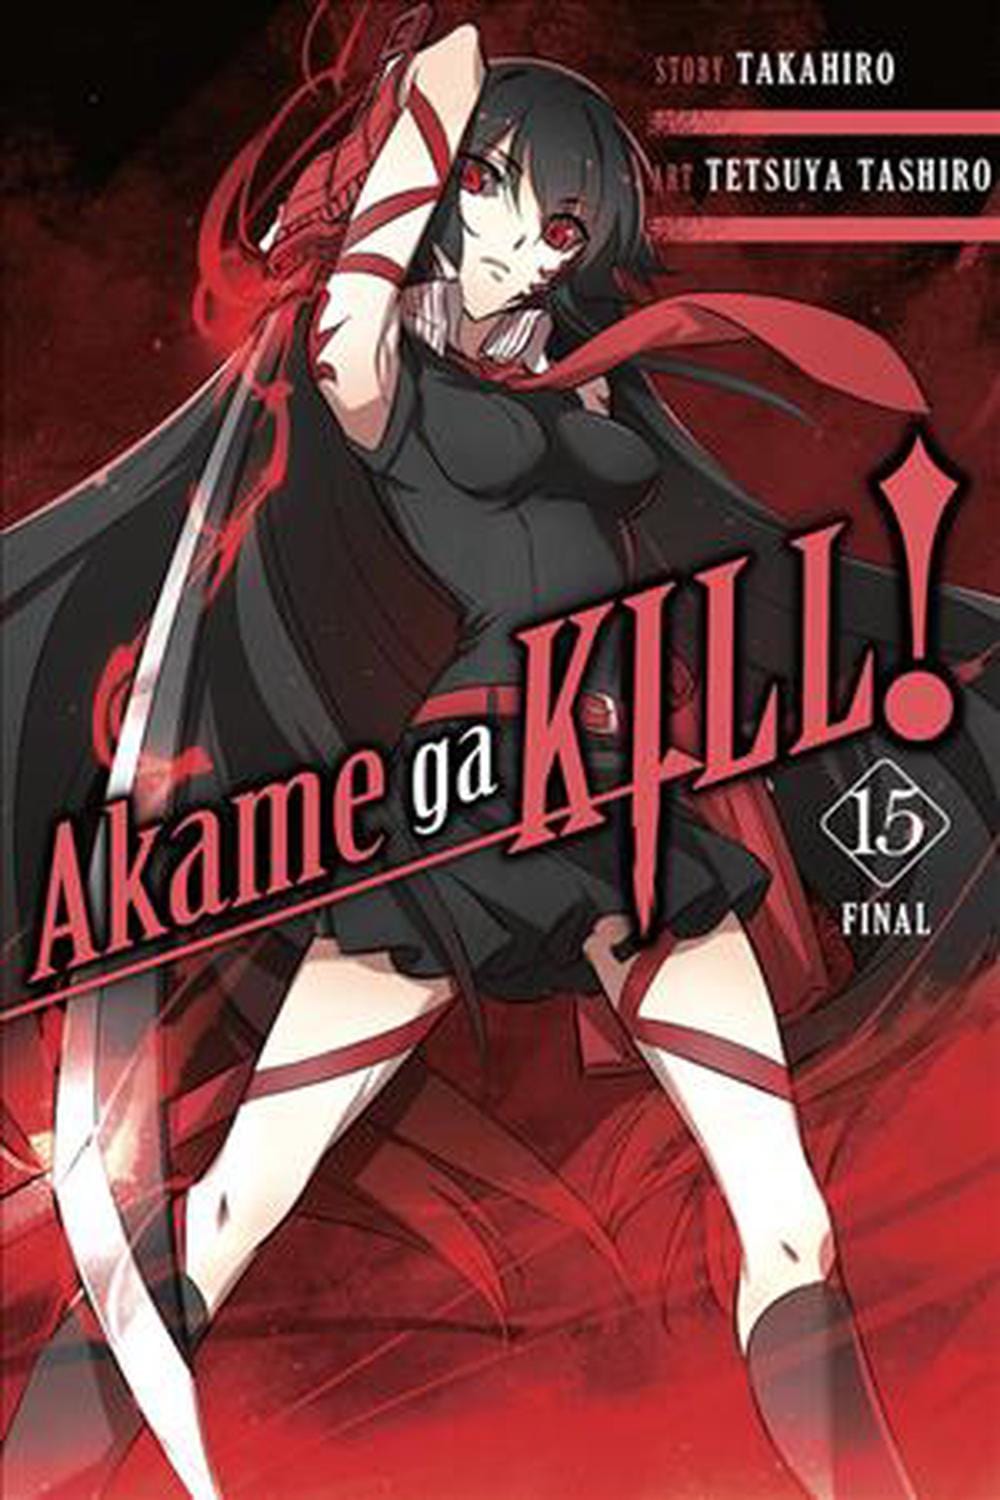 Akame ga Kill! Vol. 15 - Third Eye